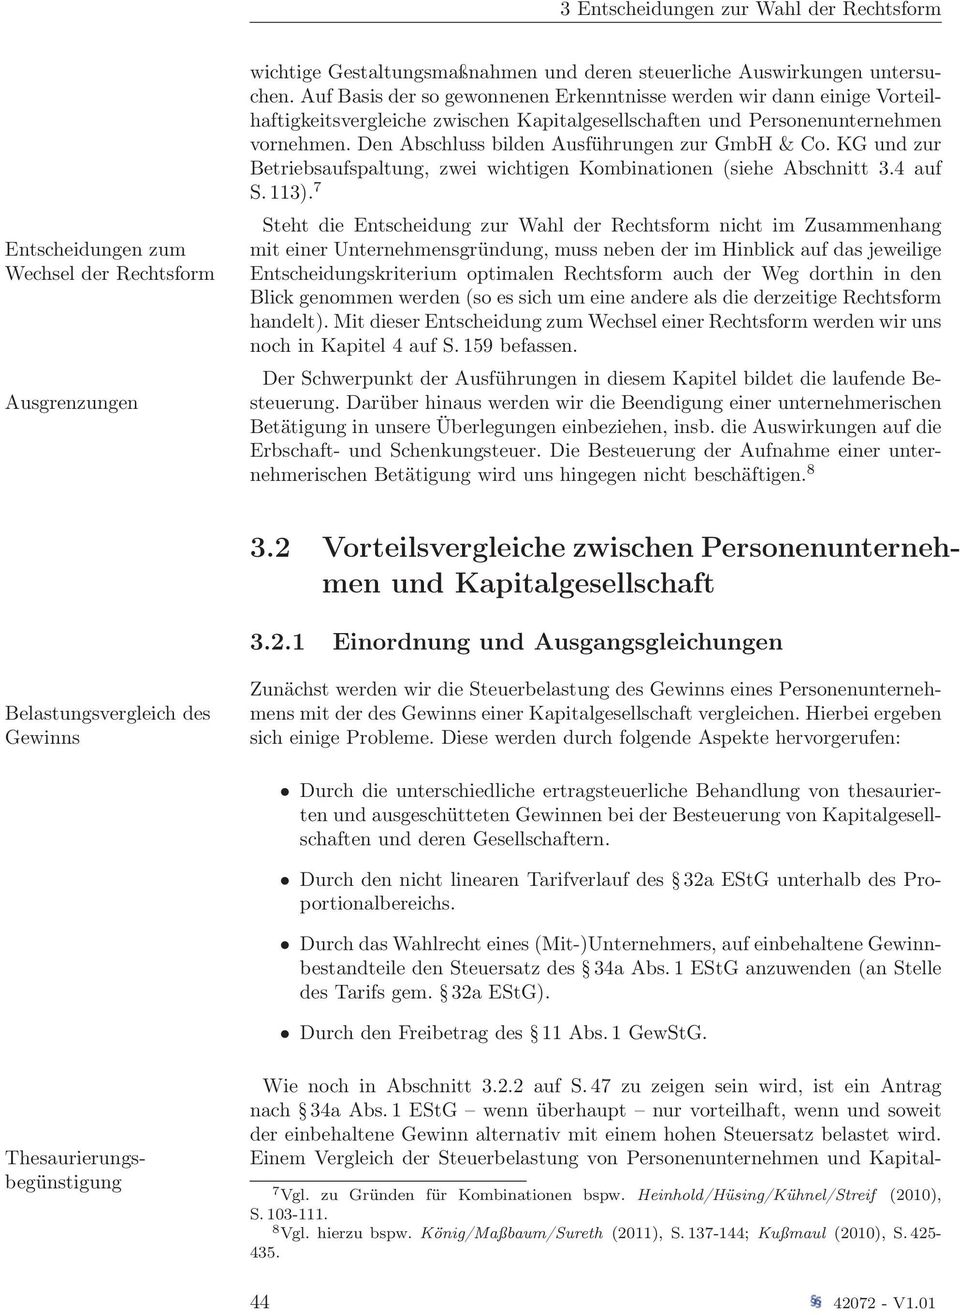 Den Abschluss bilden Ausführungen zur GmbH & Co. KG und zur Betriebsaufspaltung, zwei wichtigen Kombinationen (siehe Abschnitt 3.4 auf S. 113).